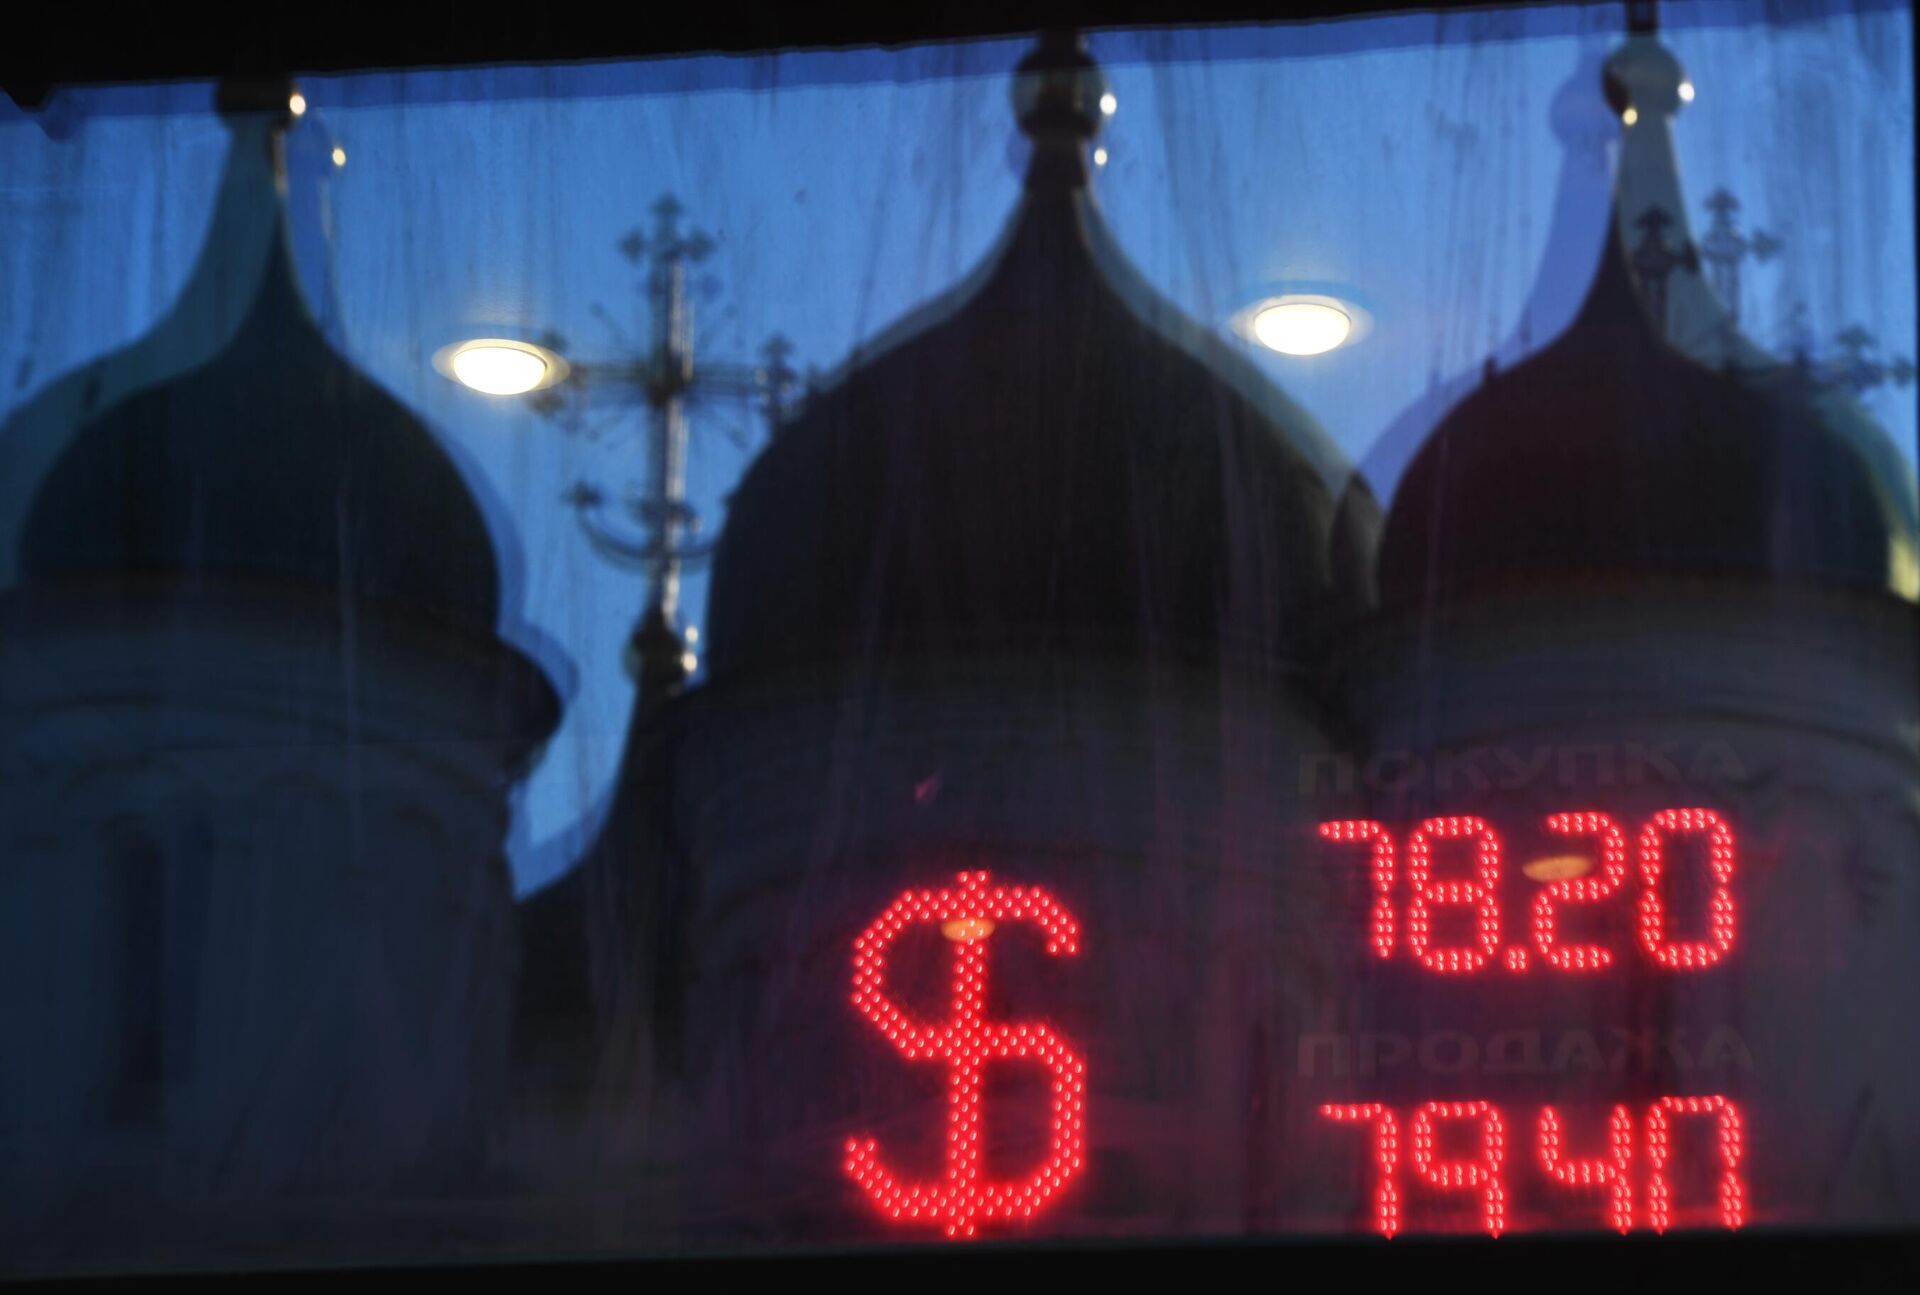 Отражение куполов церкви в окне и табло курса обмена доллара к рублю - РИА Новости, 1920, 07.10.2020